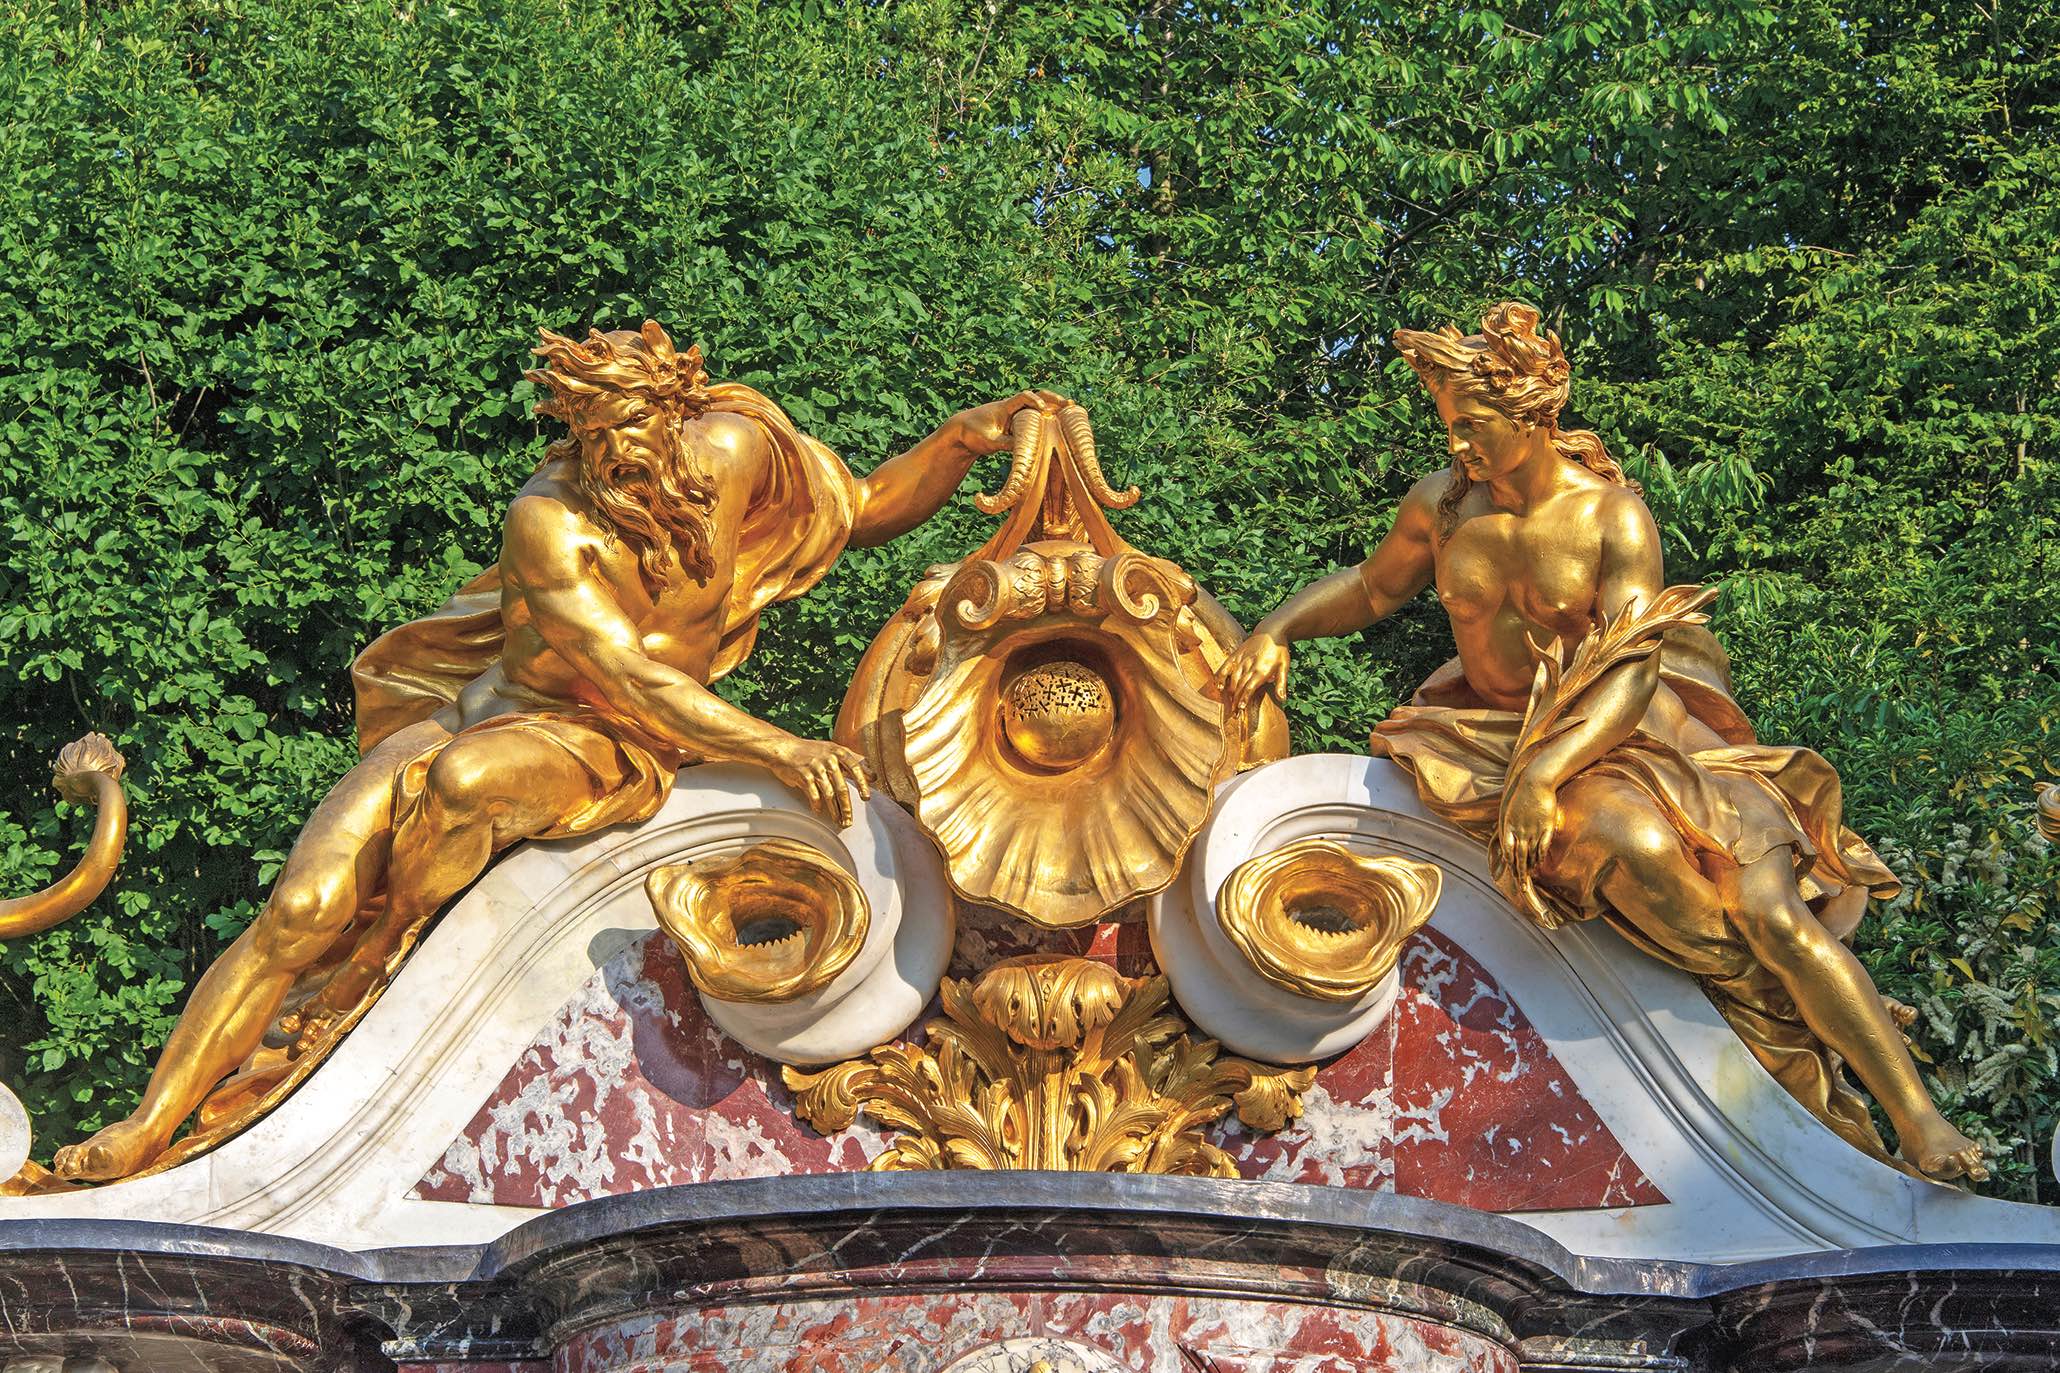 Trônant au sommet de la fontaine, Neptune et Amphitrite soutiennent l'urne d'où jaillit l'eau qui alimente le bassin. Photo service de presse. © Château de Versailles, D. Saulnier